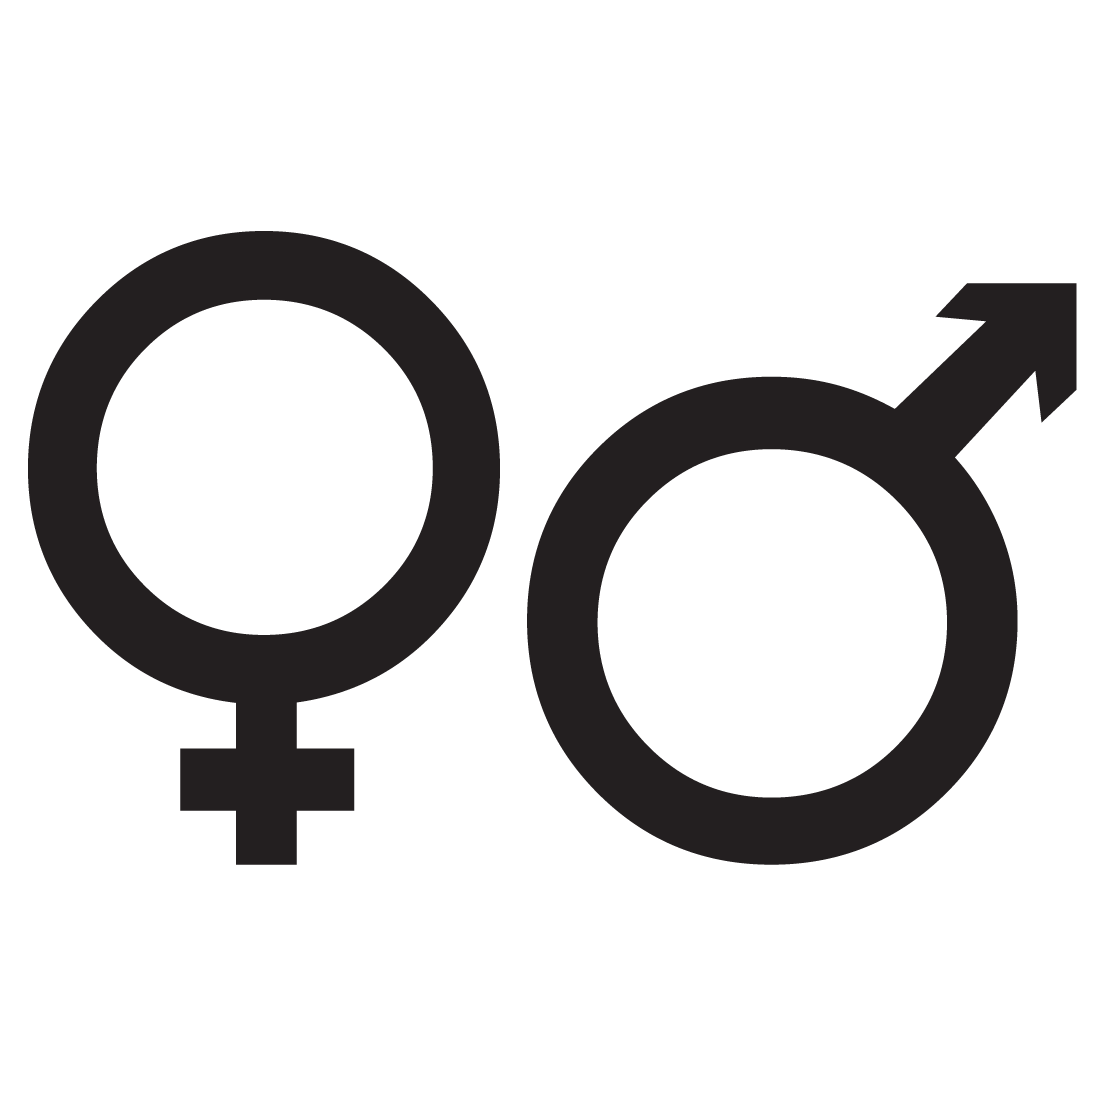 simbolo-femenino